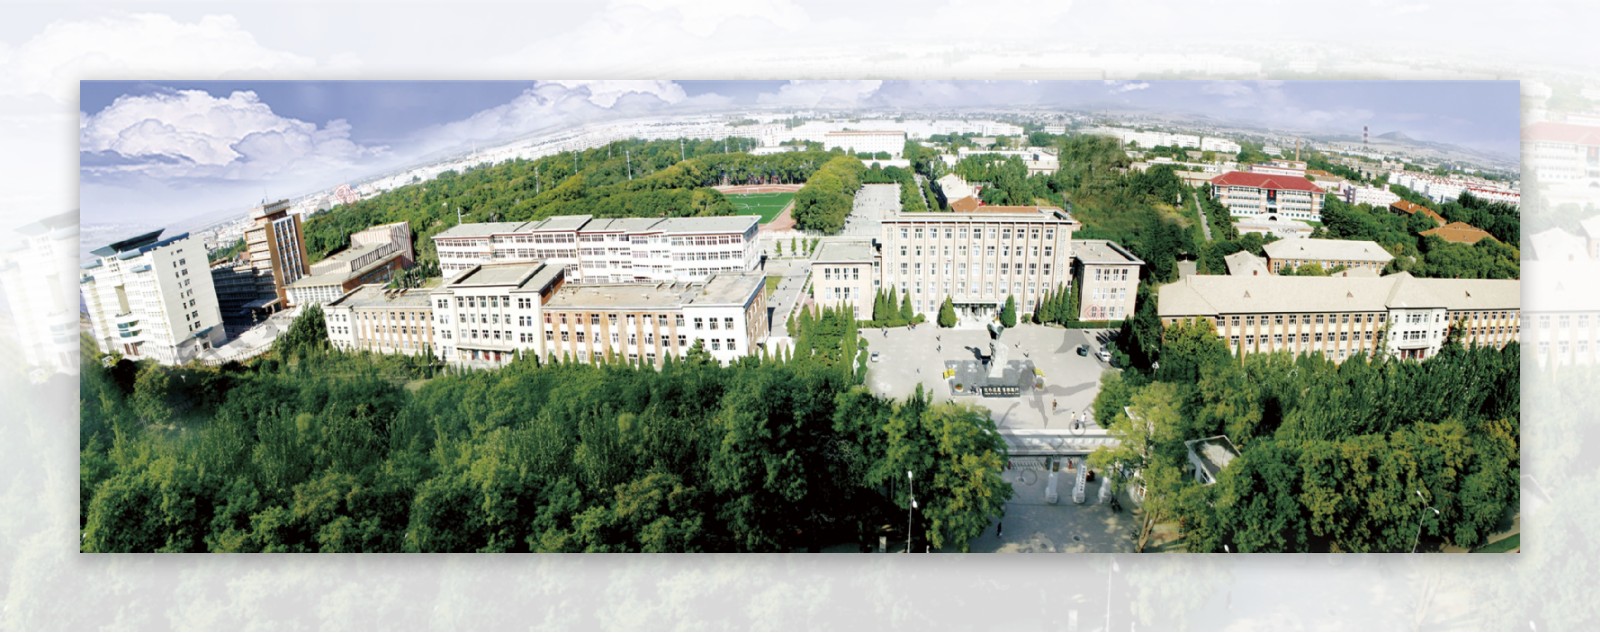 辽宁工程技术大学校园全景图图片